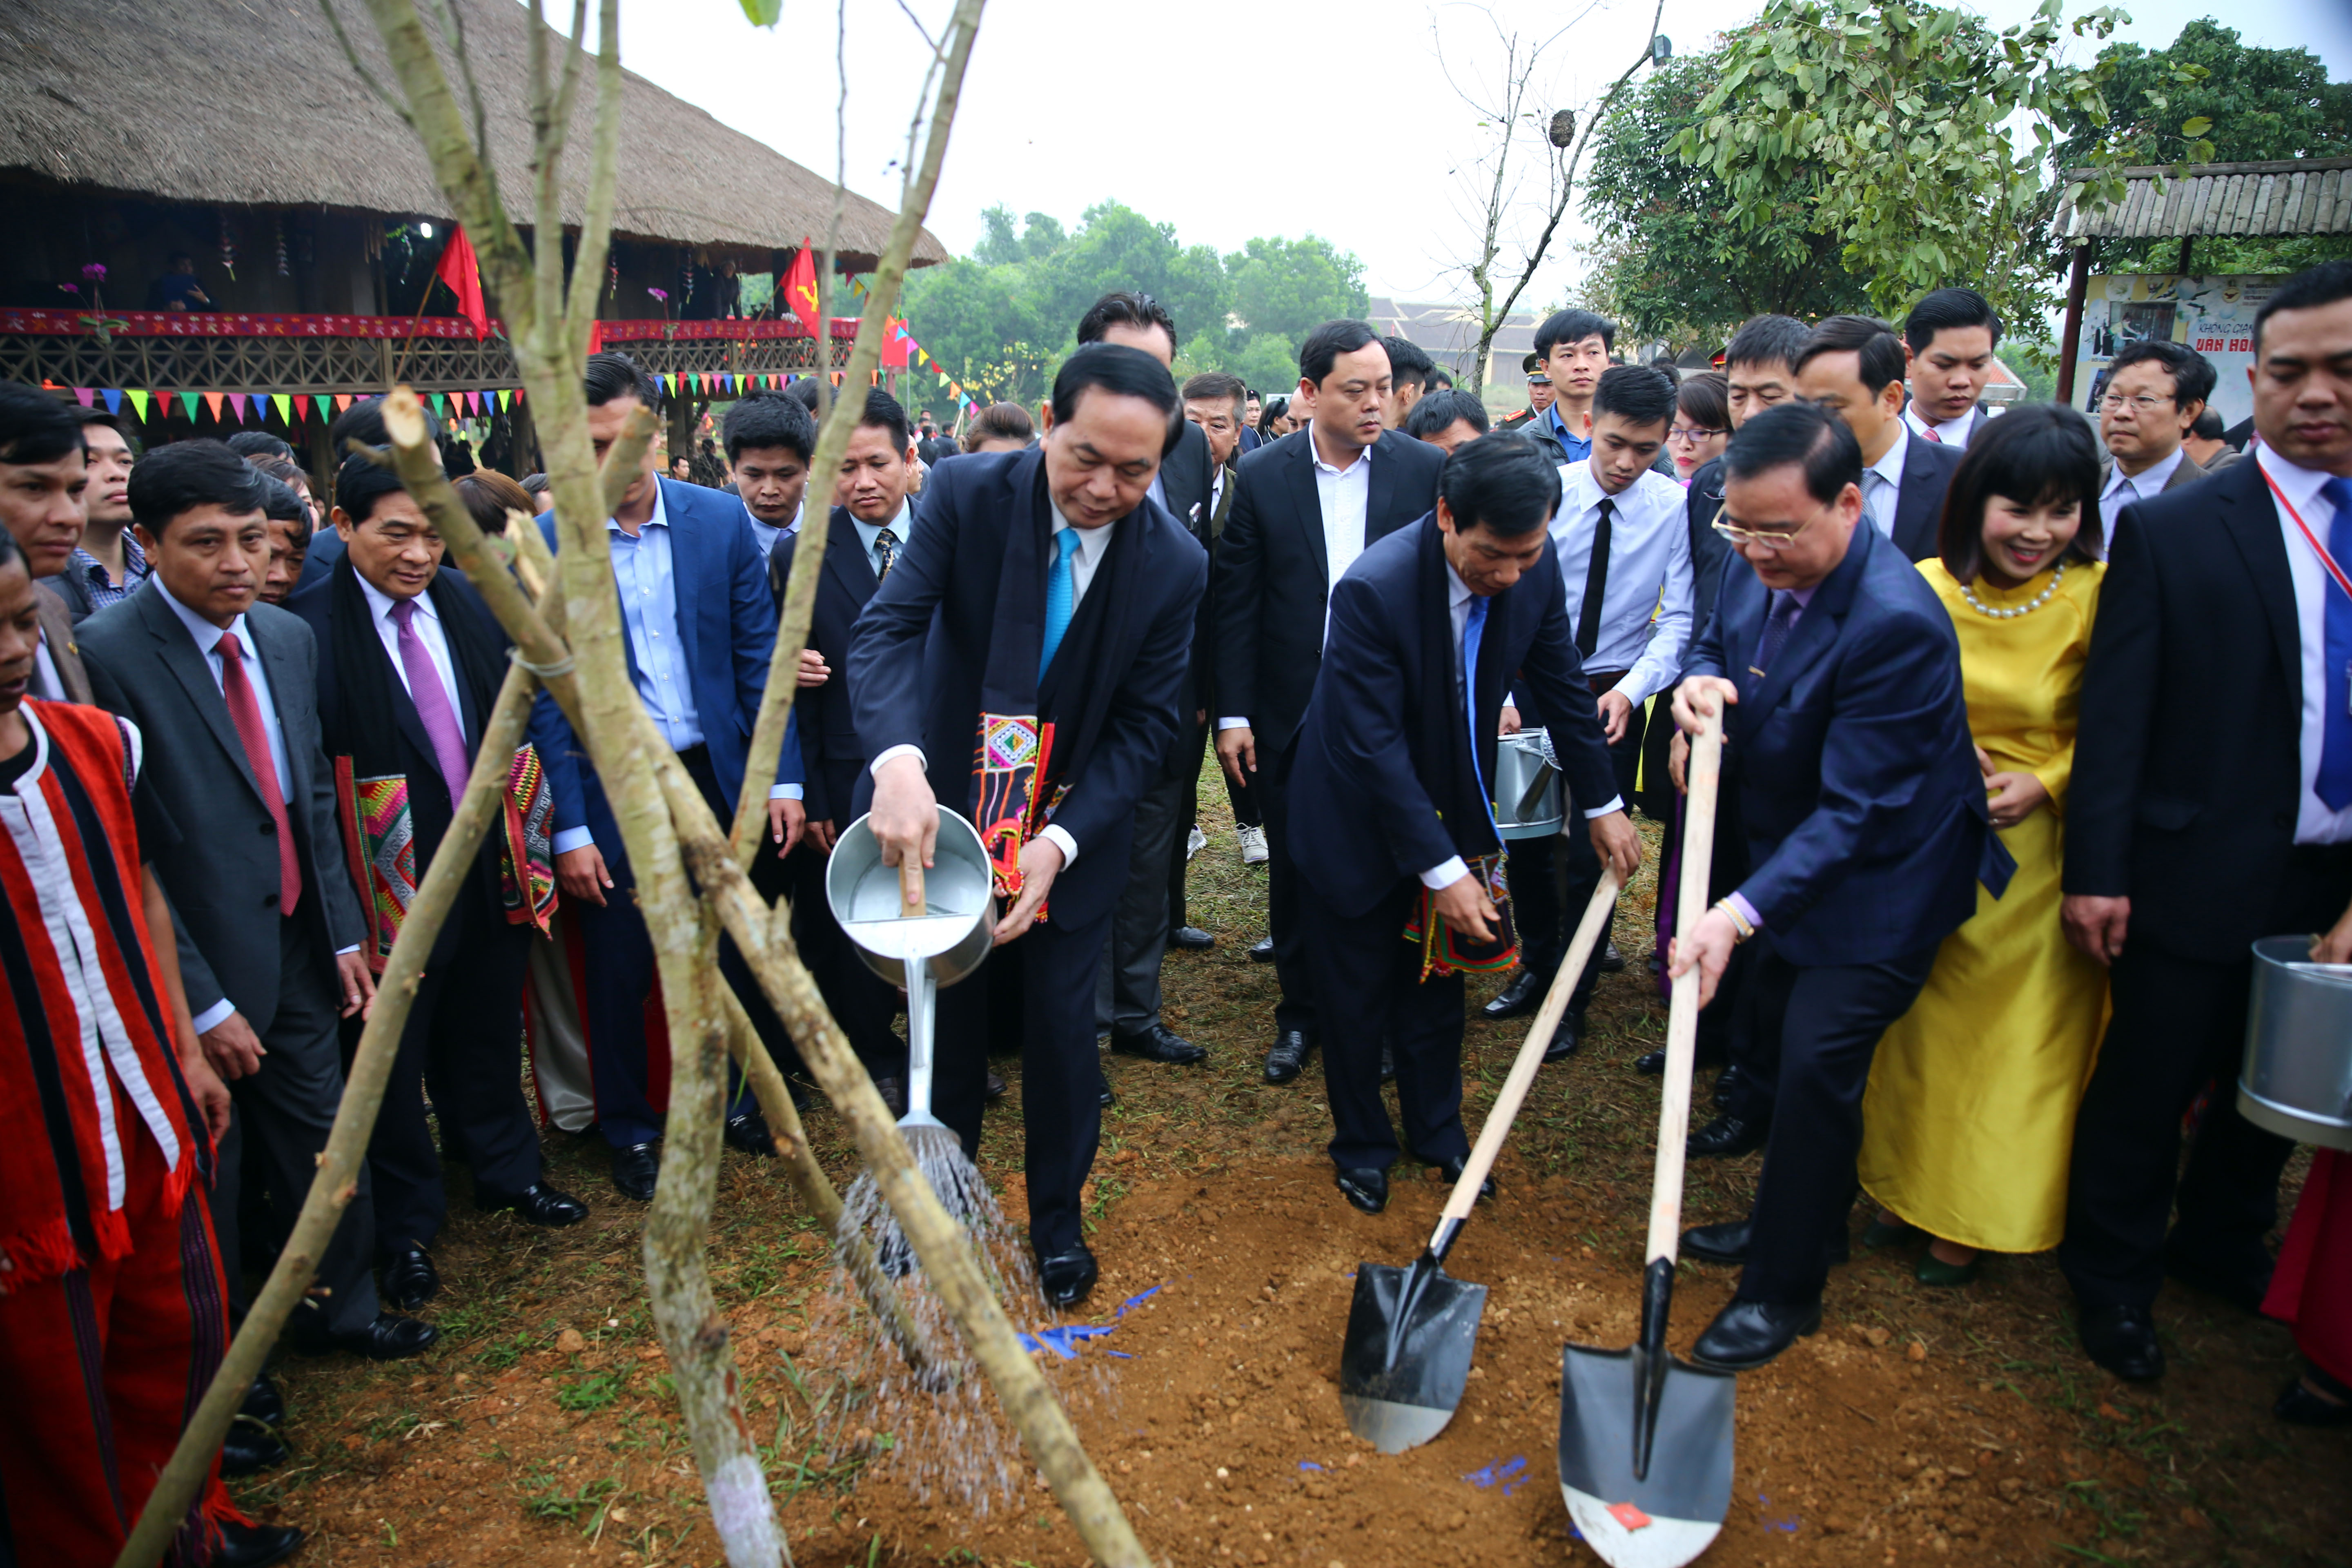 Chủ tịch nước Trần Đại Quang và các đại biểu trồng cây lưu niệm tại Làng Văn hóa